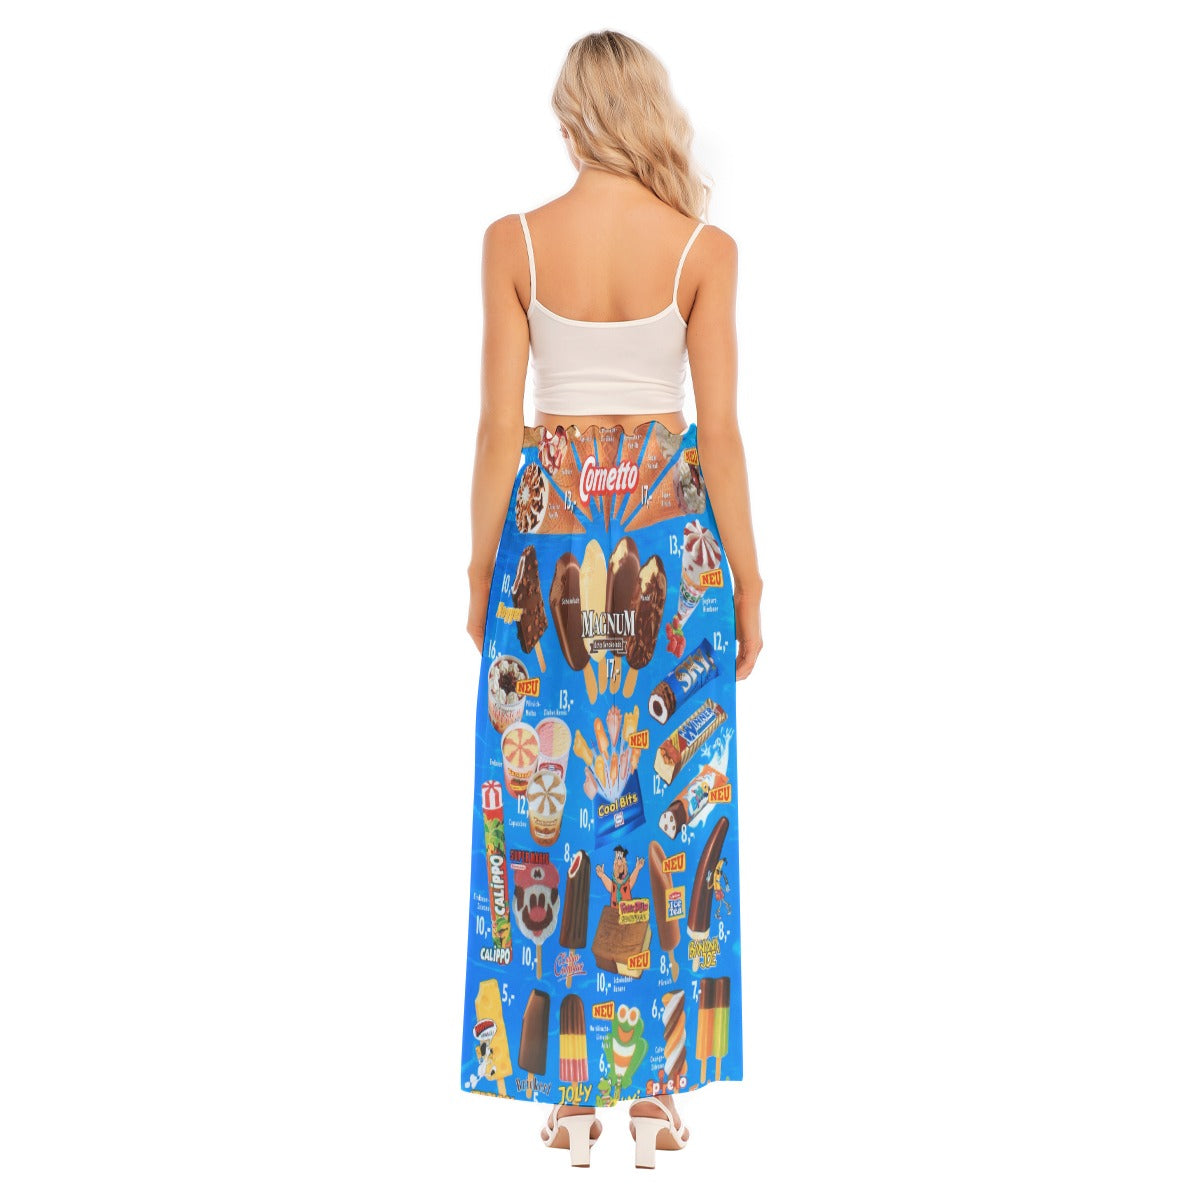 Lightweight, breezy skirt perfect for summer